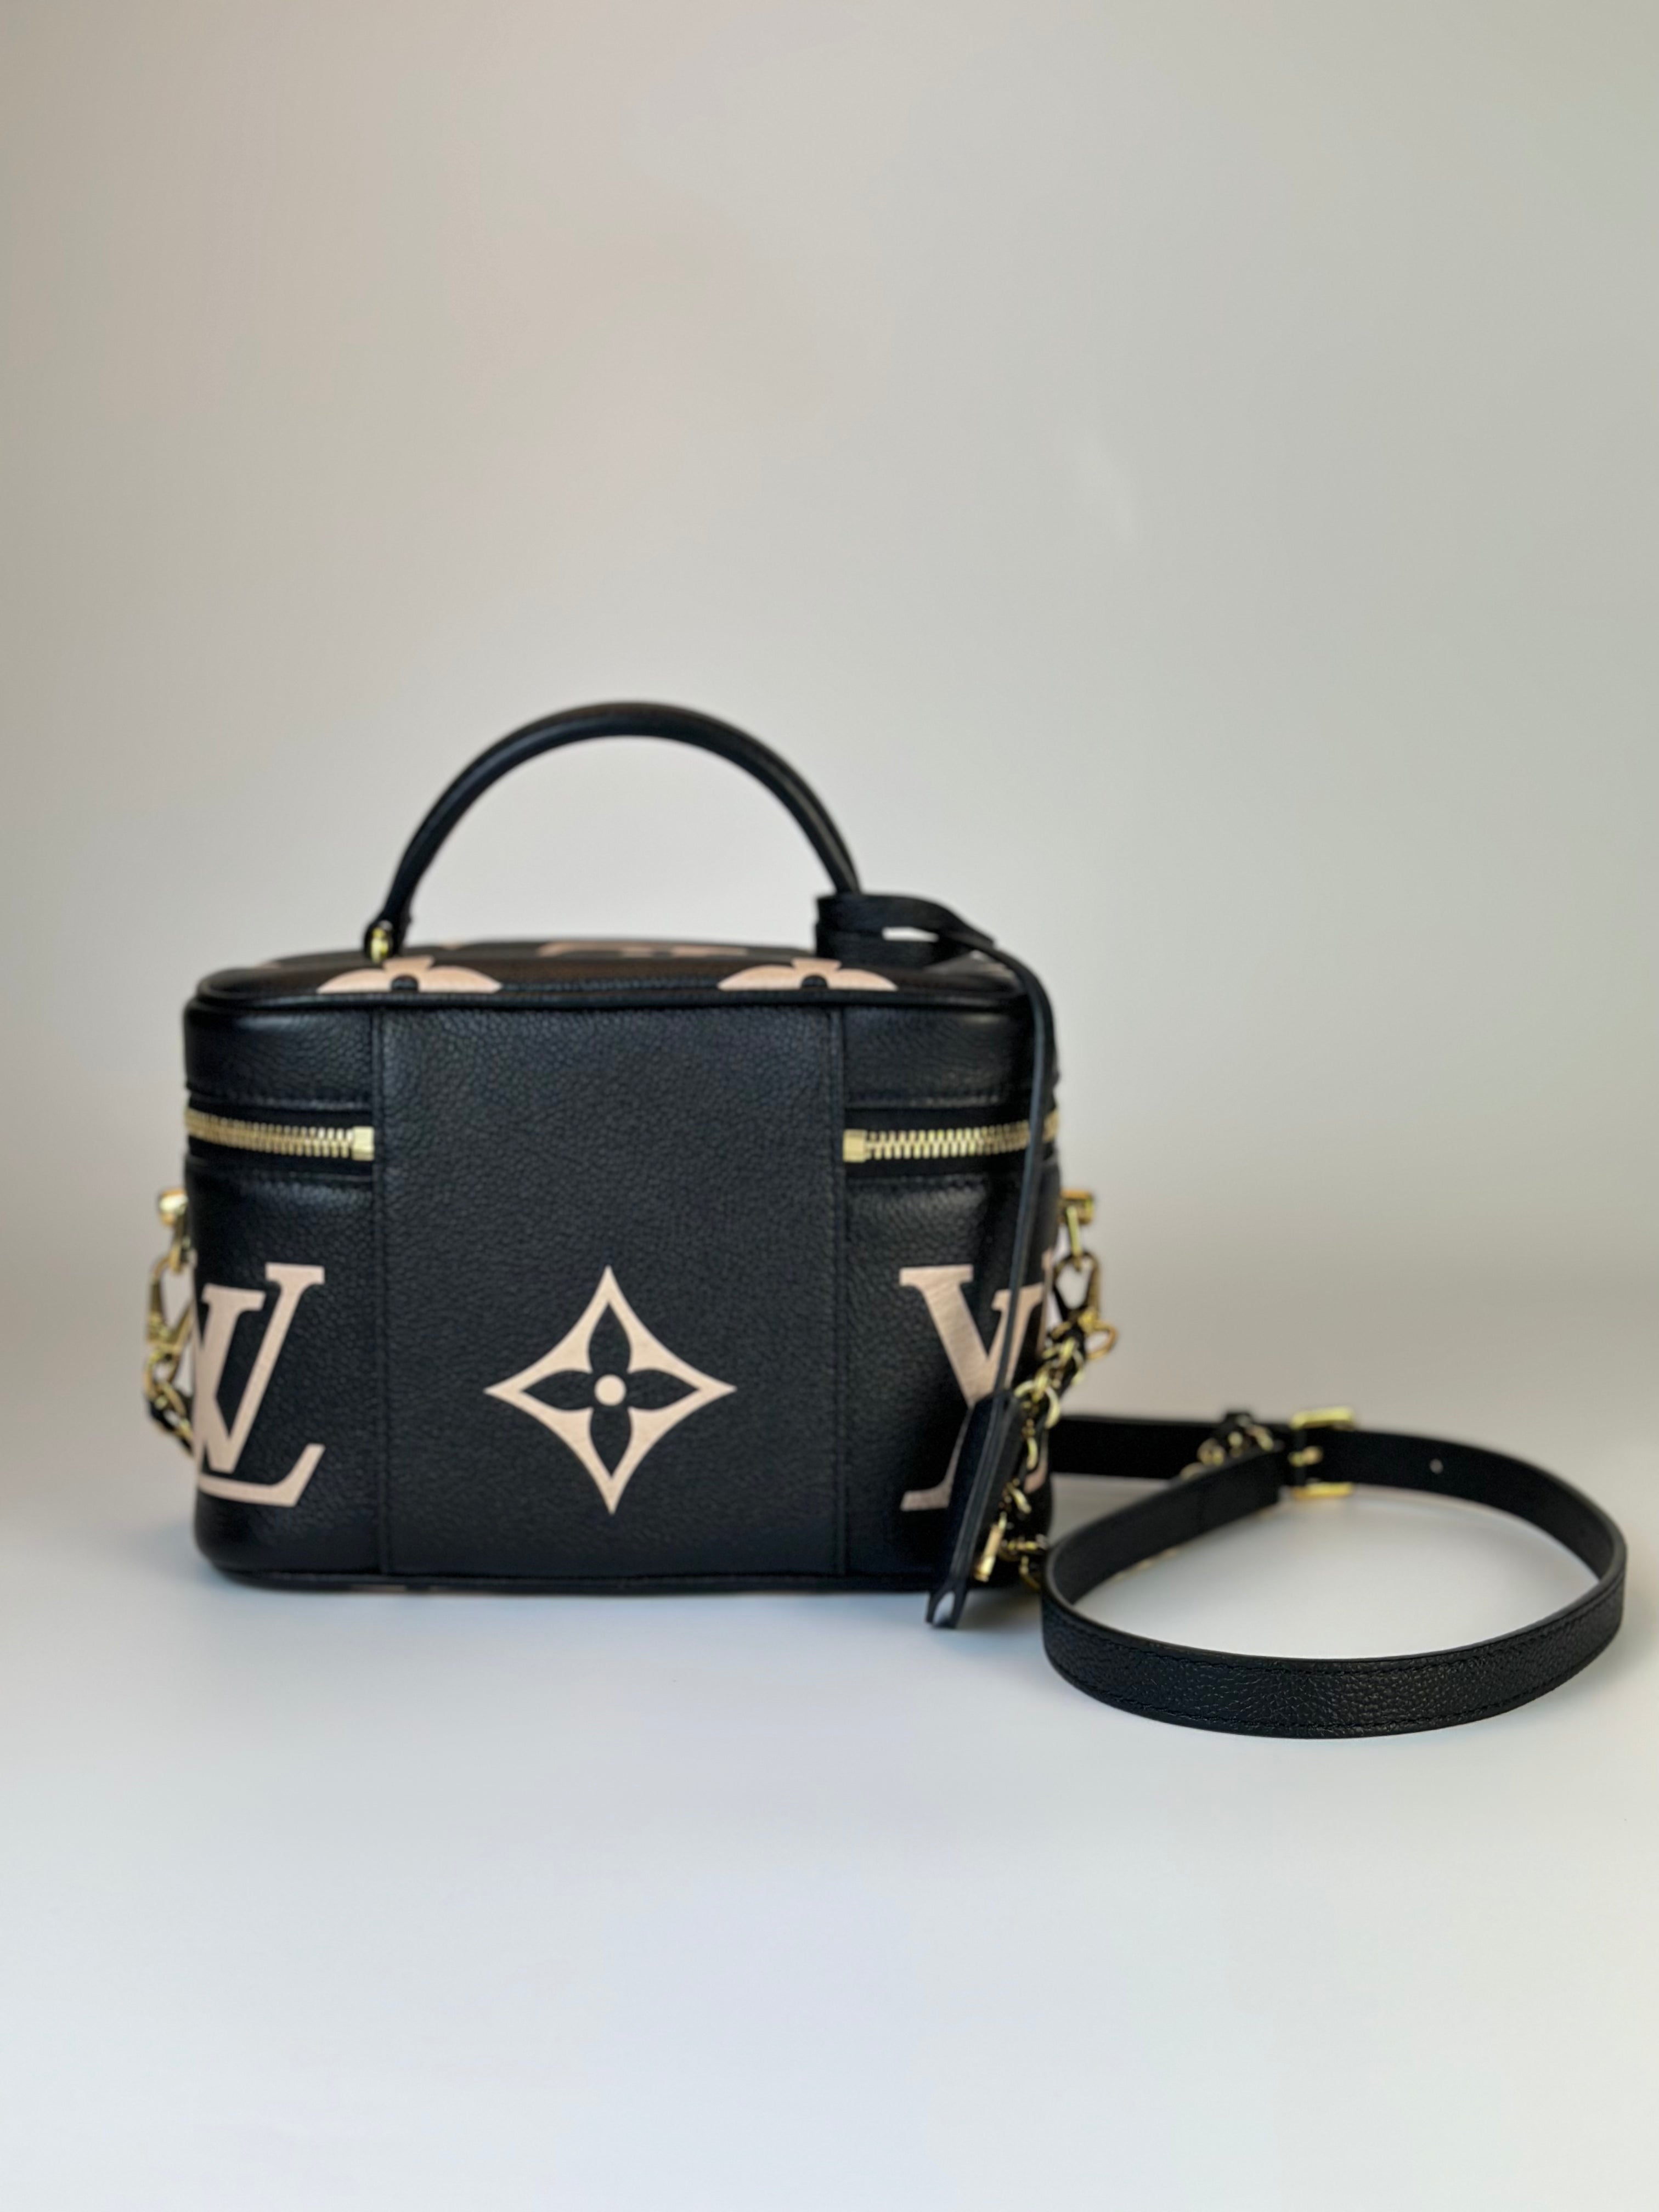 Louis Vuitton Vanity PM Black/Beige Empreinte Leather